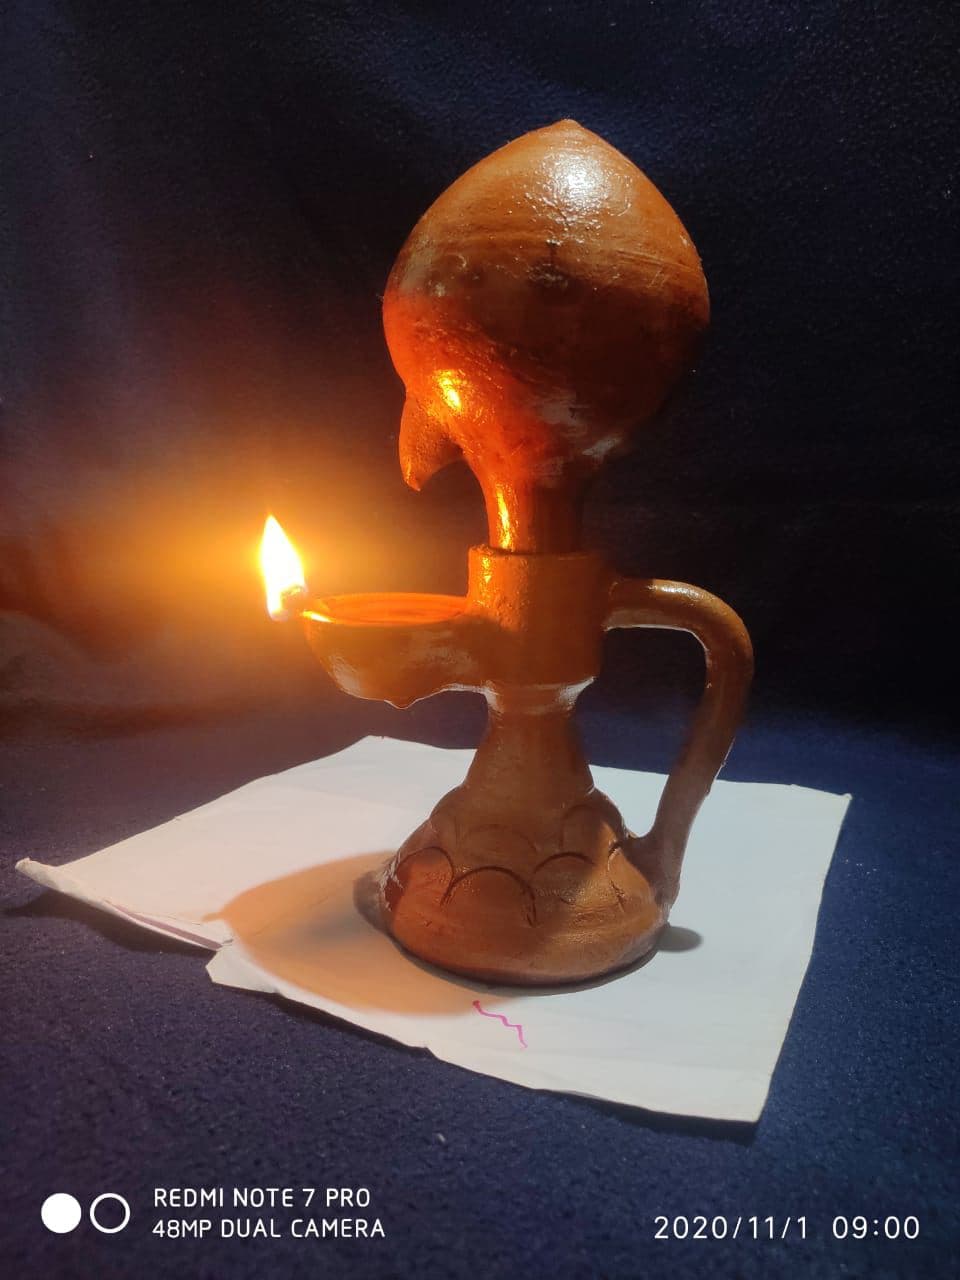 magical lamp